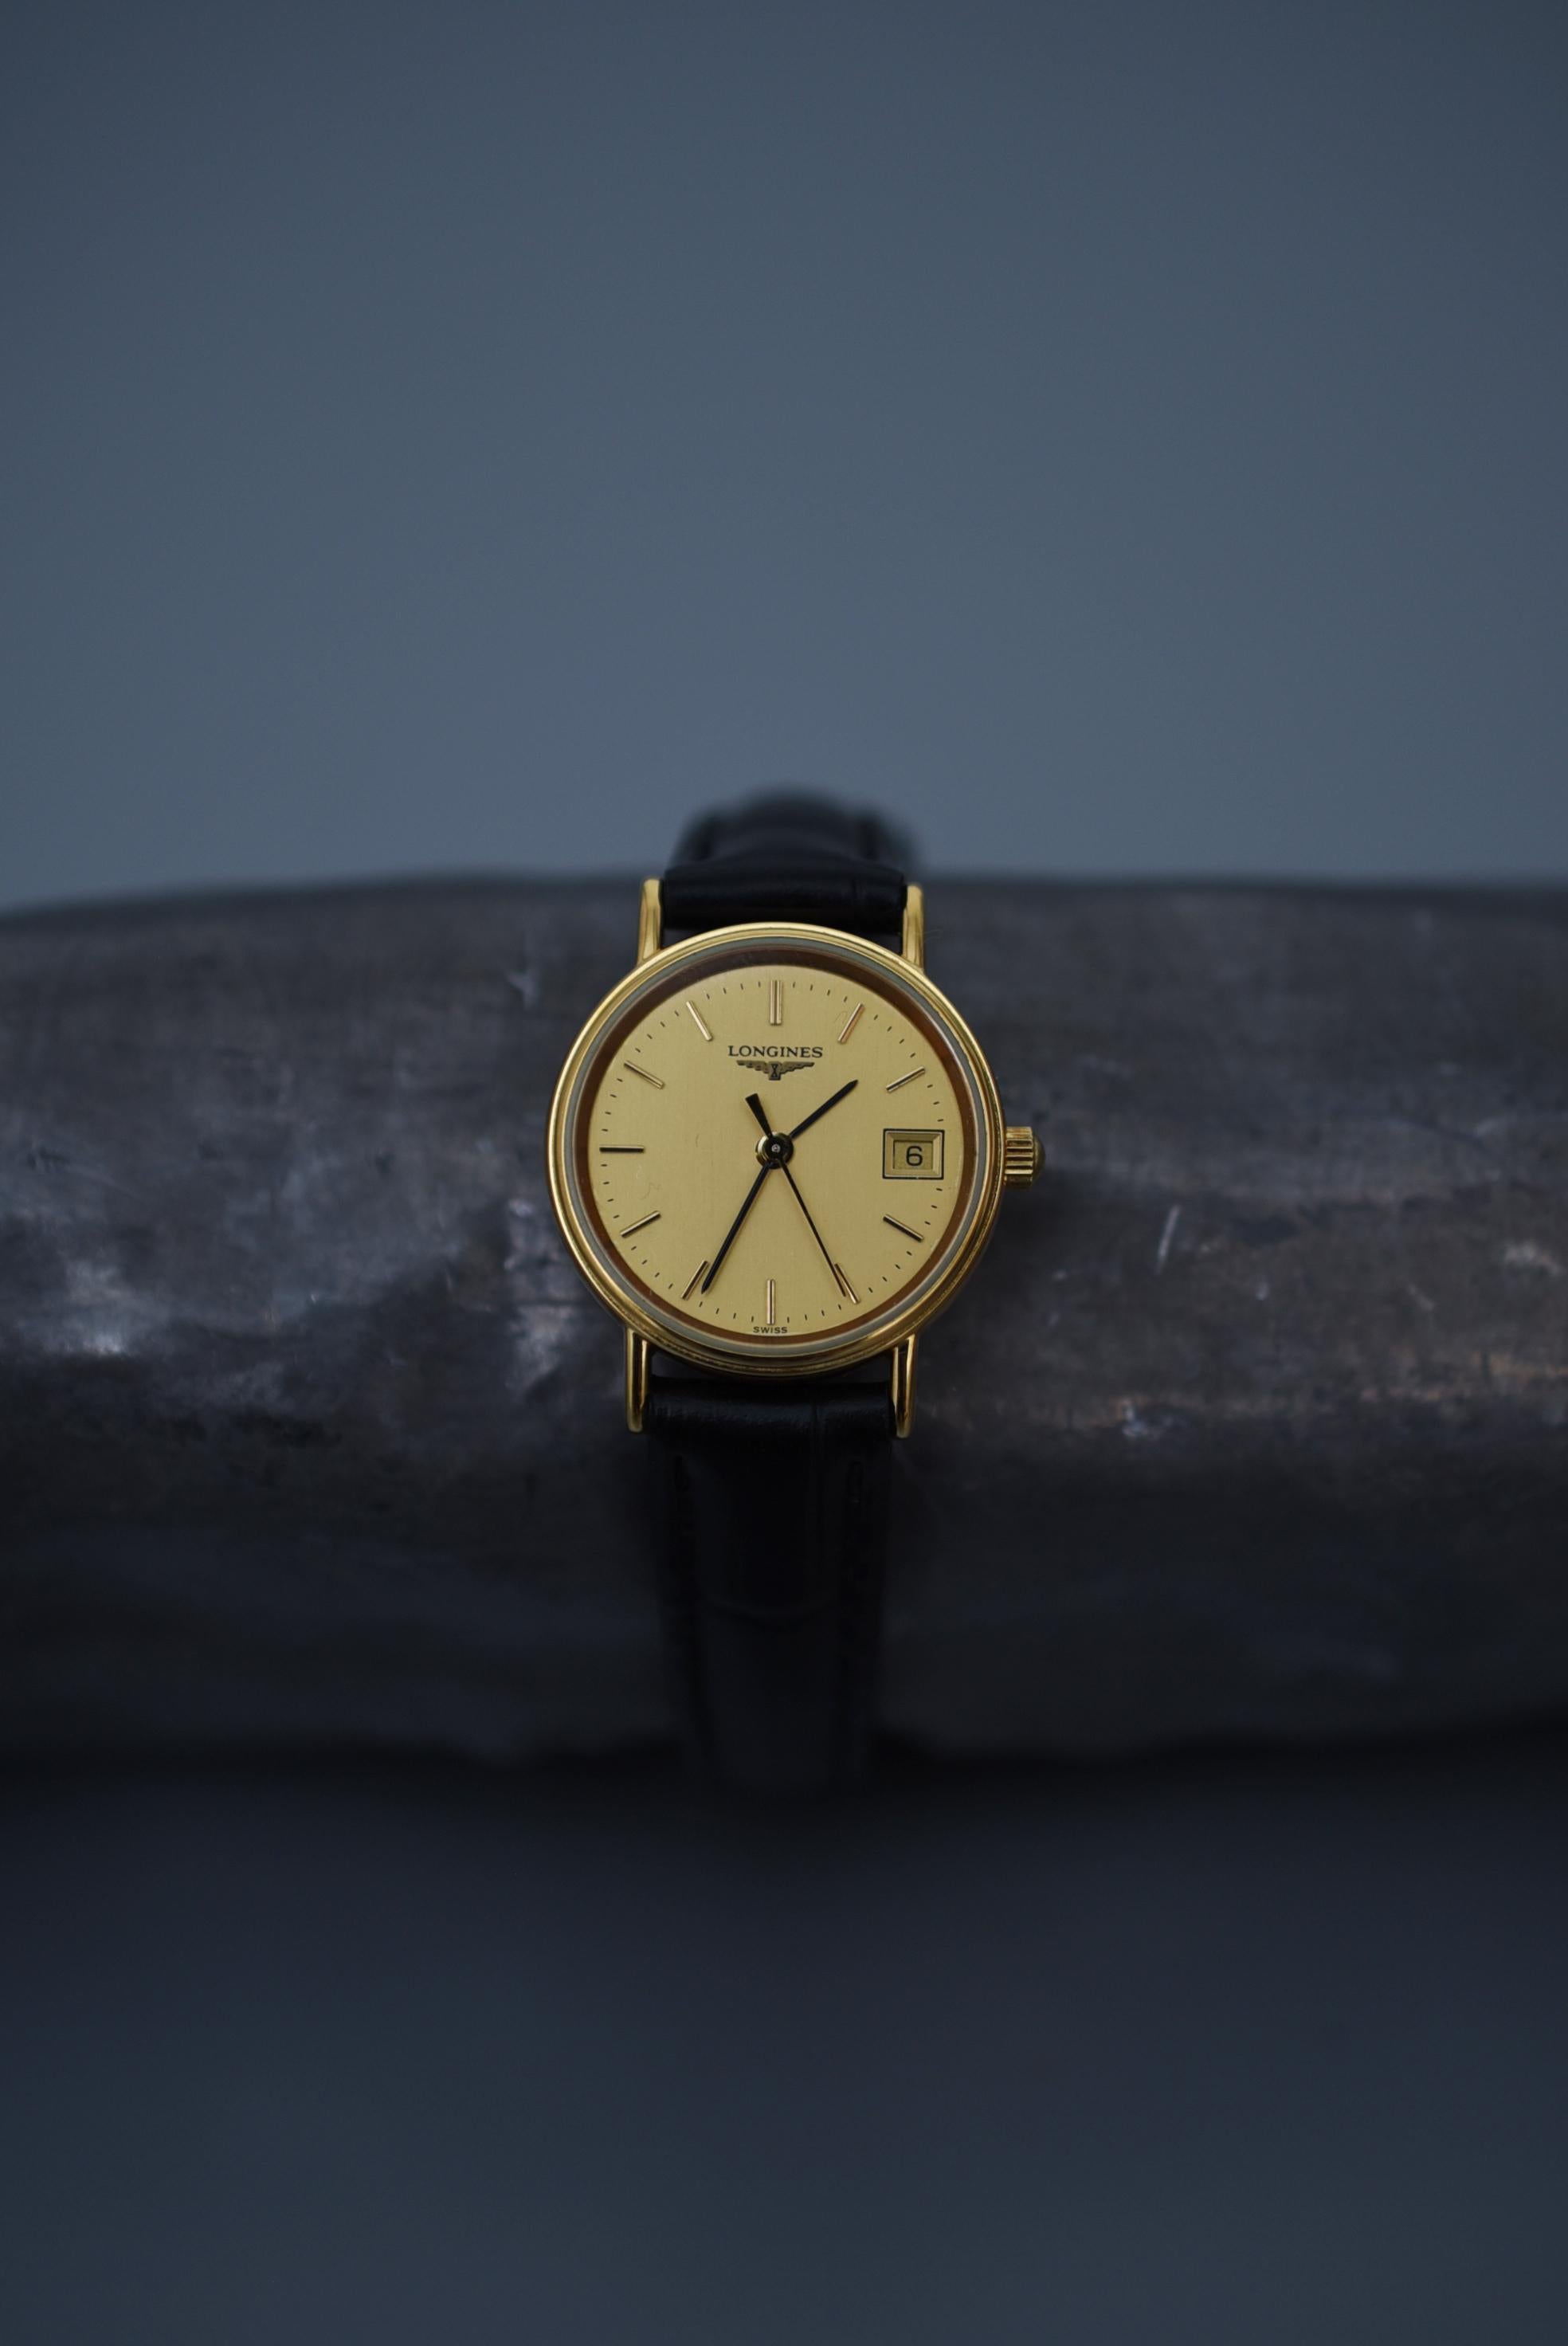 LONGINES  / 1970er Jahre Vintage Uhr Damen

Größe: Gehäuse 2,3 cm
Armumfang : 14cm zwischen 18cm
No.27223962

Bewegung : Automatik

Es handelt sich um ein hochpräzises Modell, das mit einem Kal. 431, einem Uhrwerk mit 10 Oszillationen und